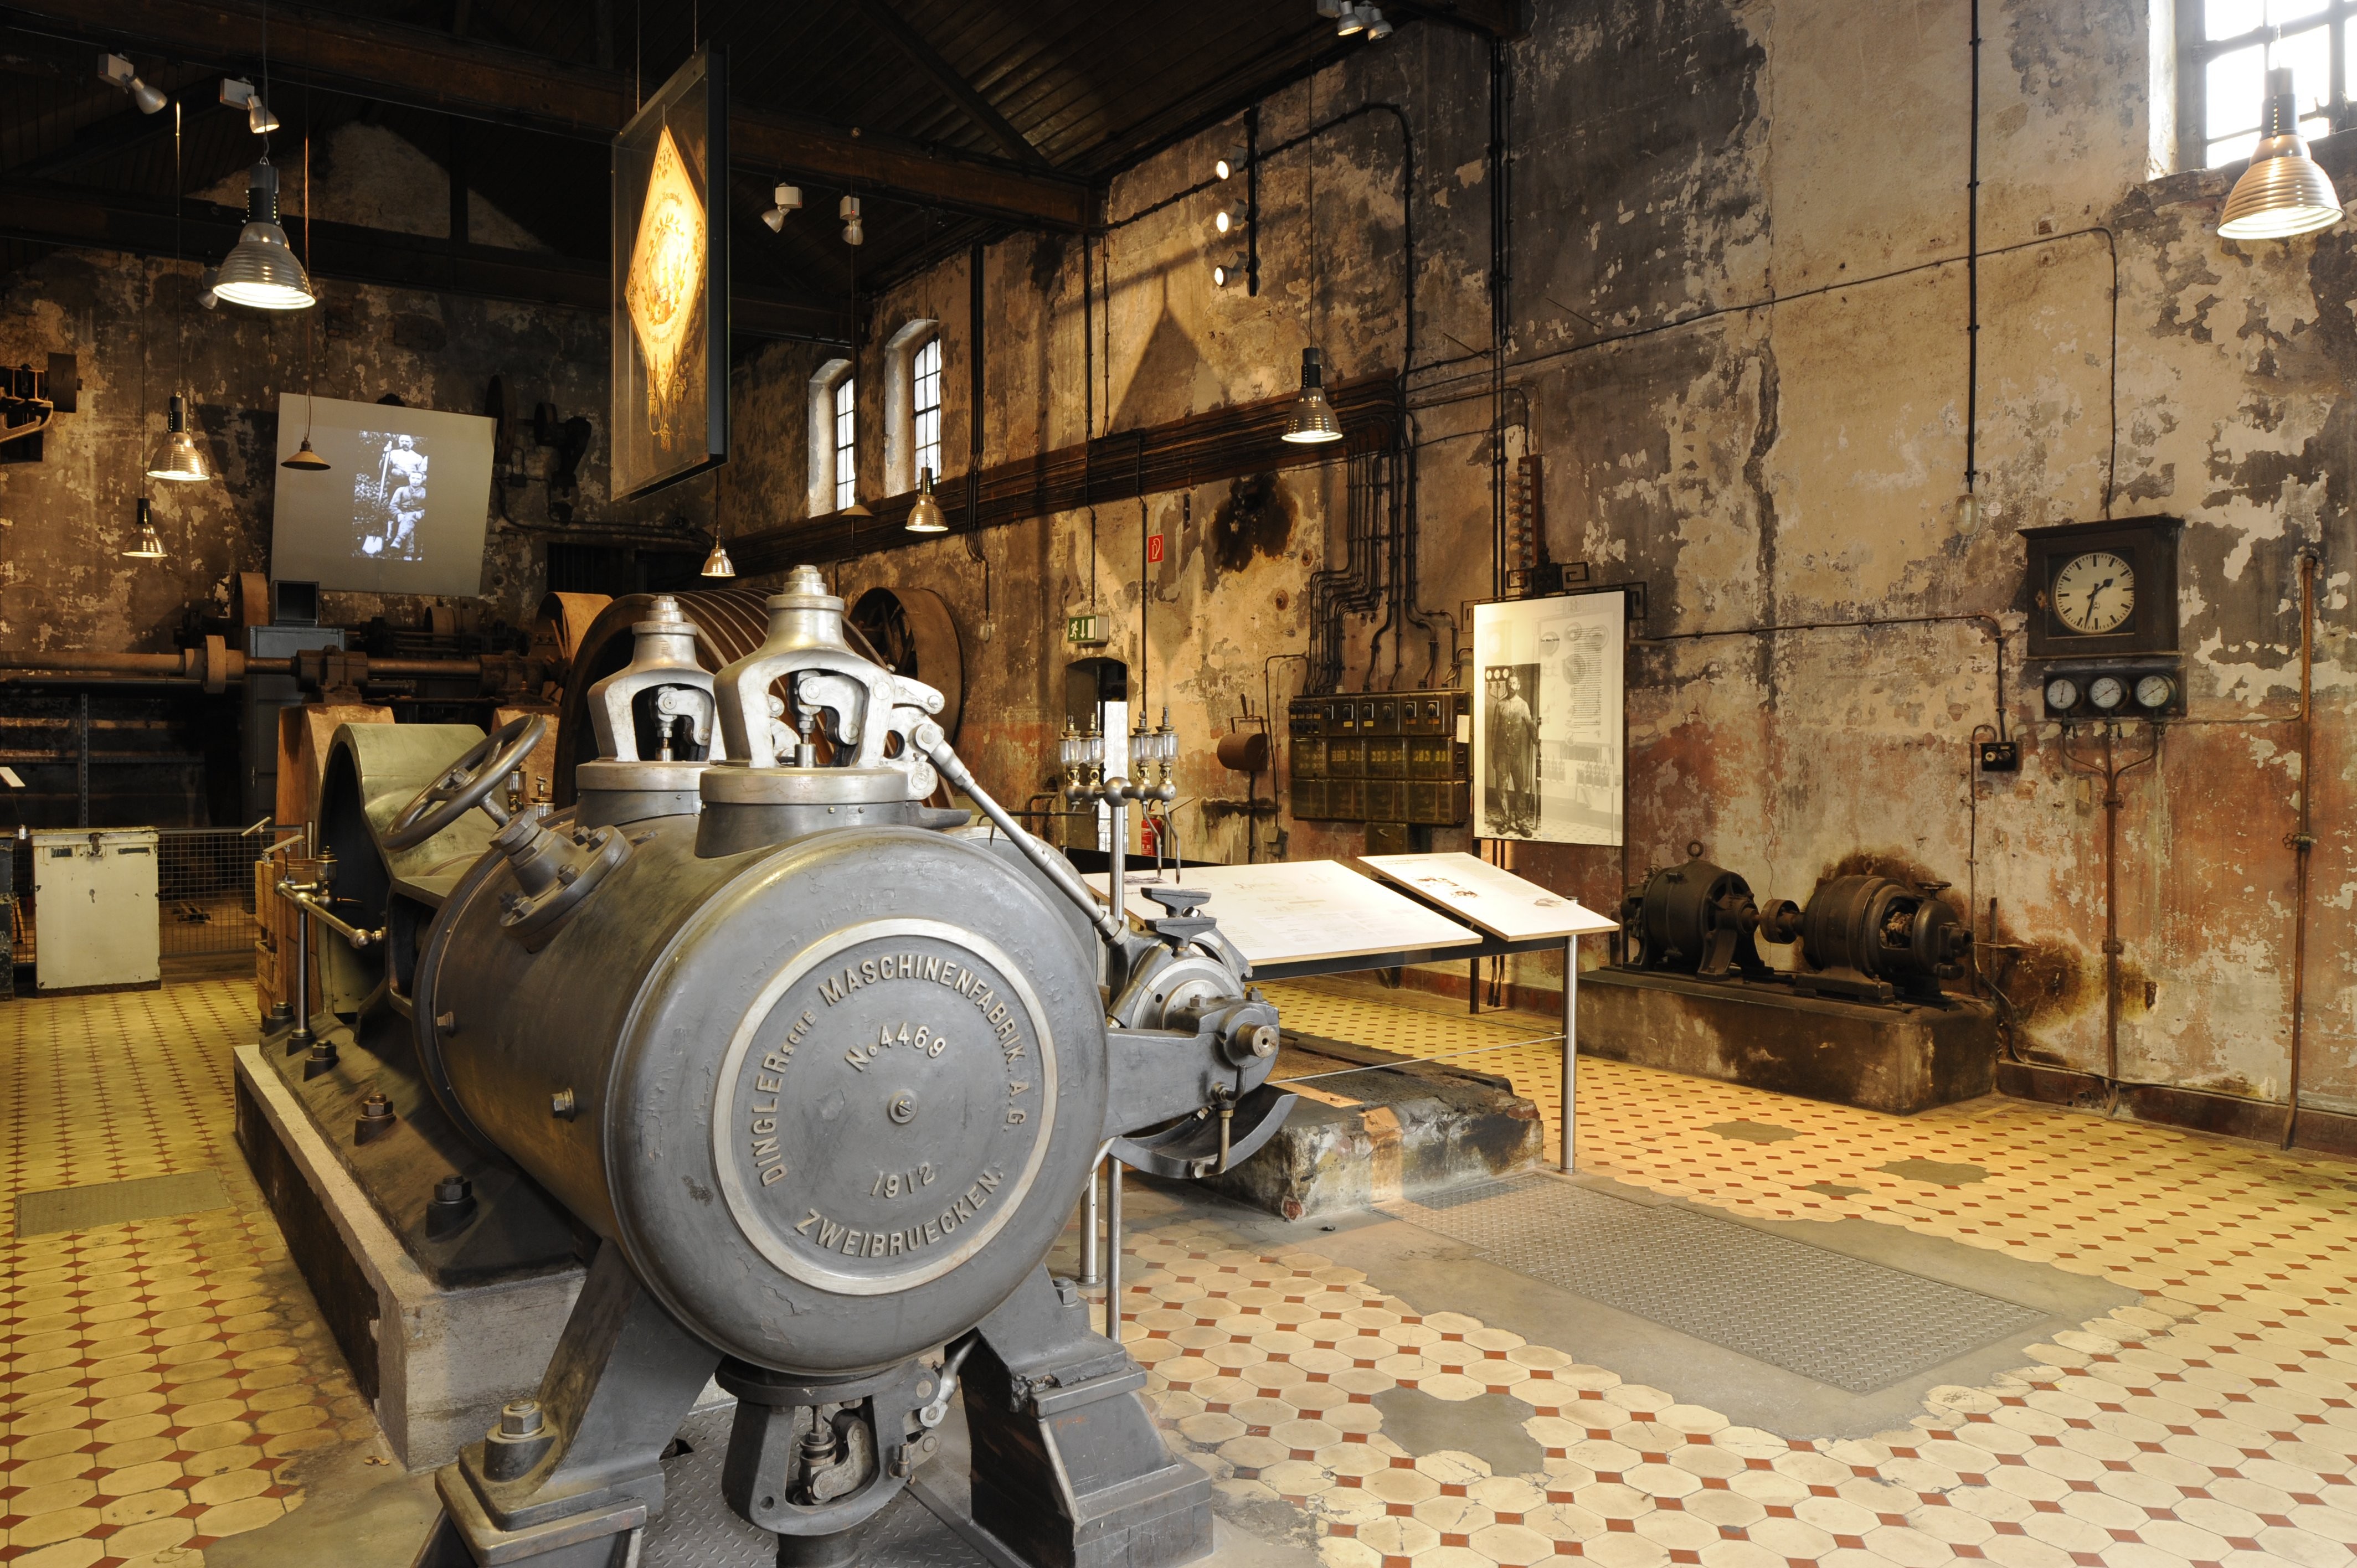 Die 1910 aufgestellte Dampfmaschine der Gesenkschmiede Hendrichs wurde Mitte der 1950er Jahre verschrottet. Geblieben ist das Maschinenhaus mit all seinen historischen Spuren. Für die Museumsausstellung wurde eine baugleiche Dampfmaschine aufgestellt.